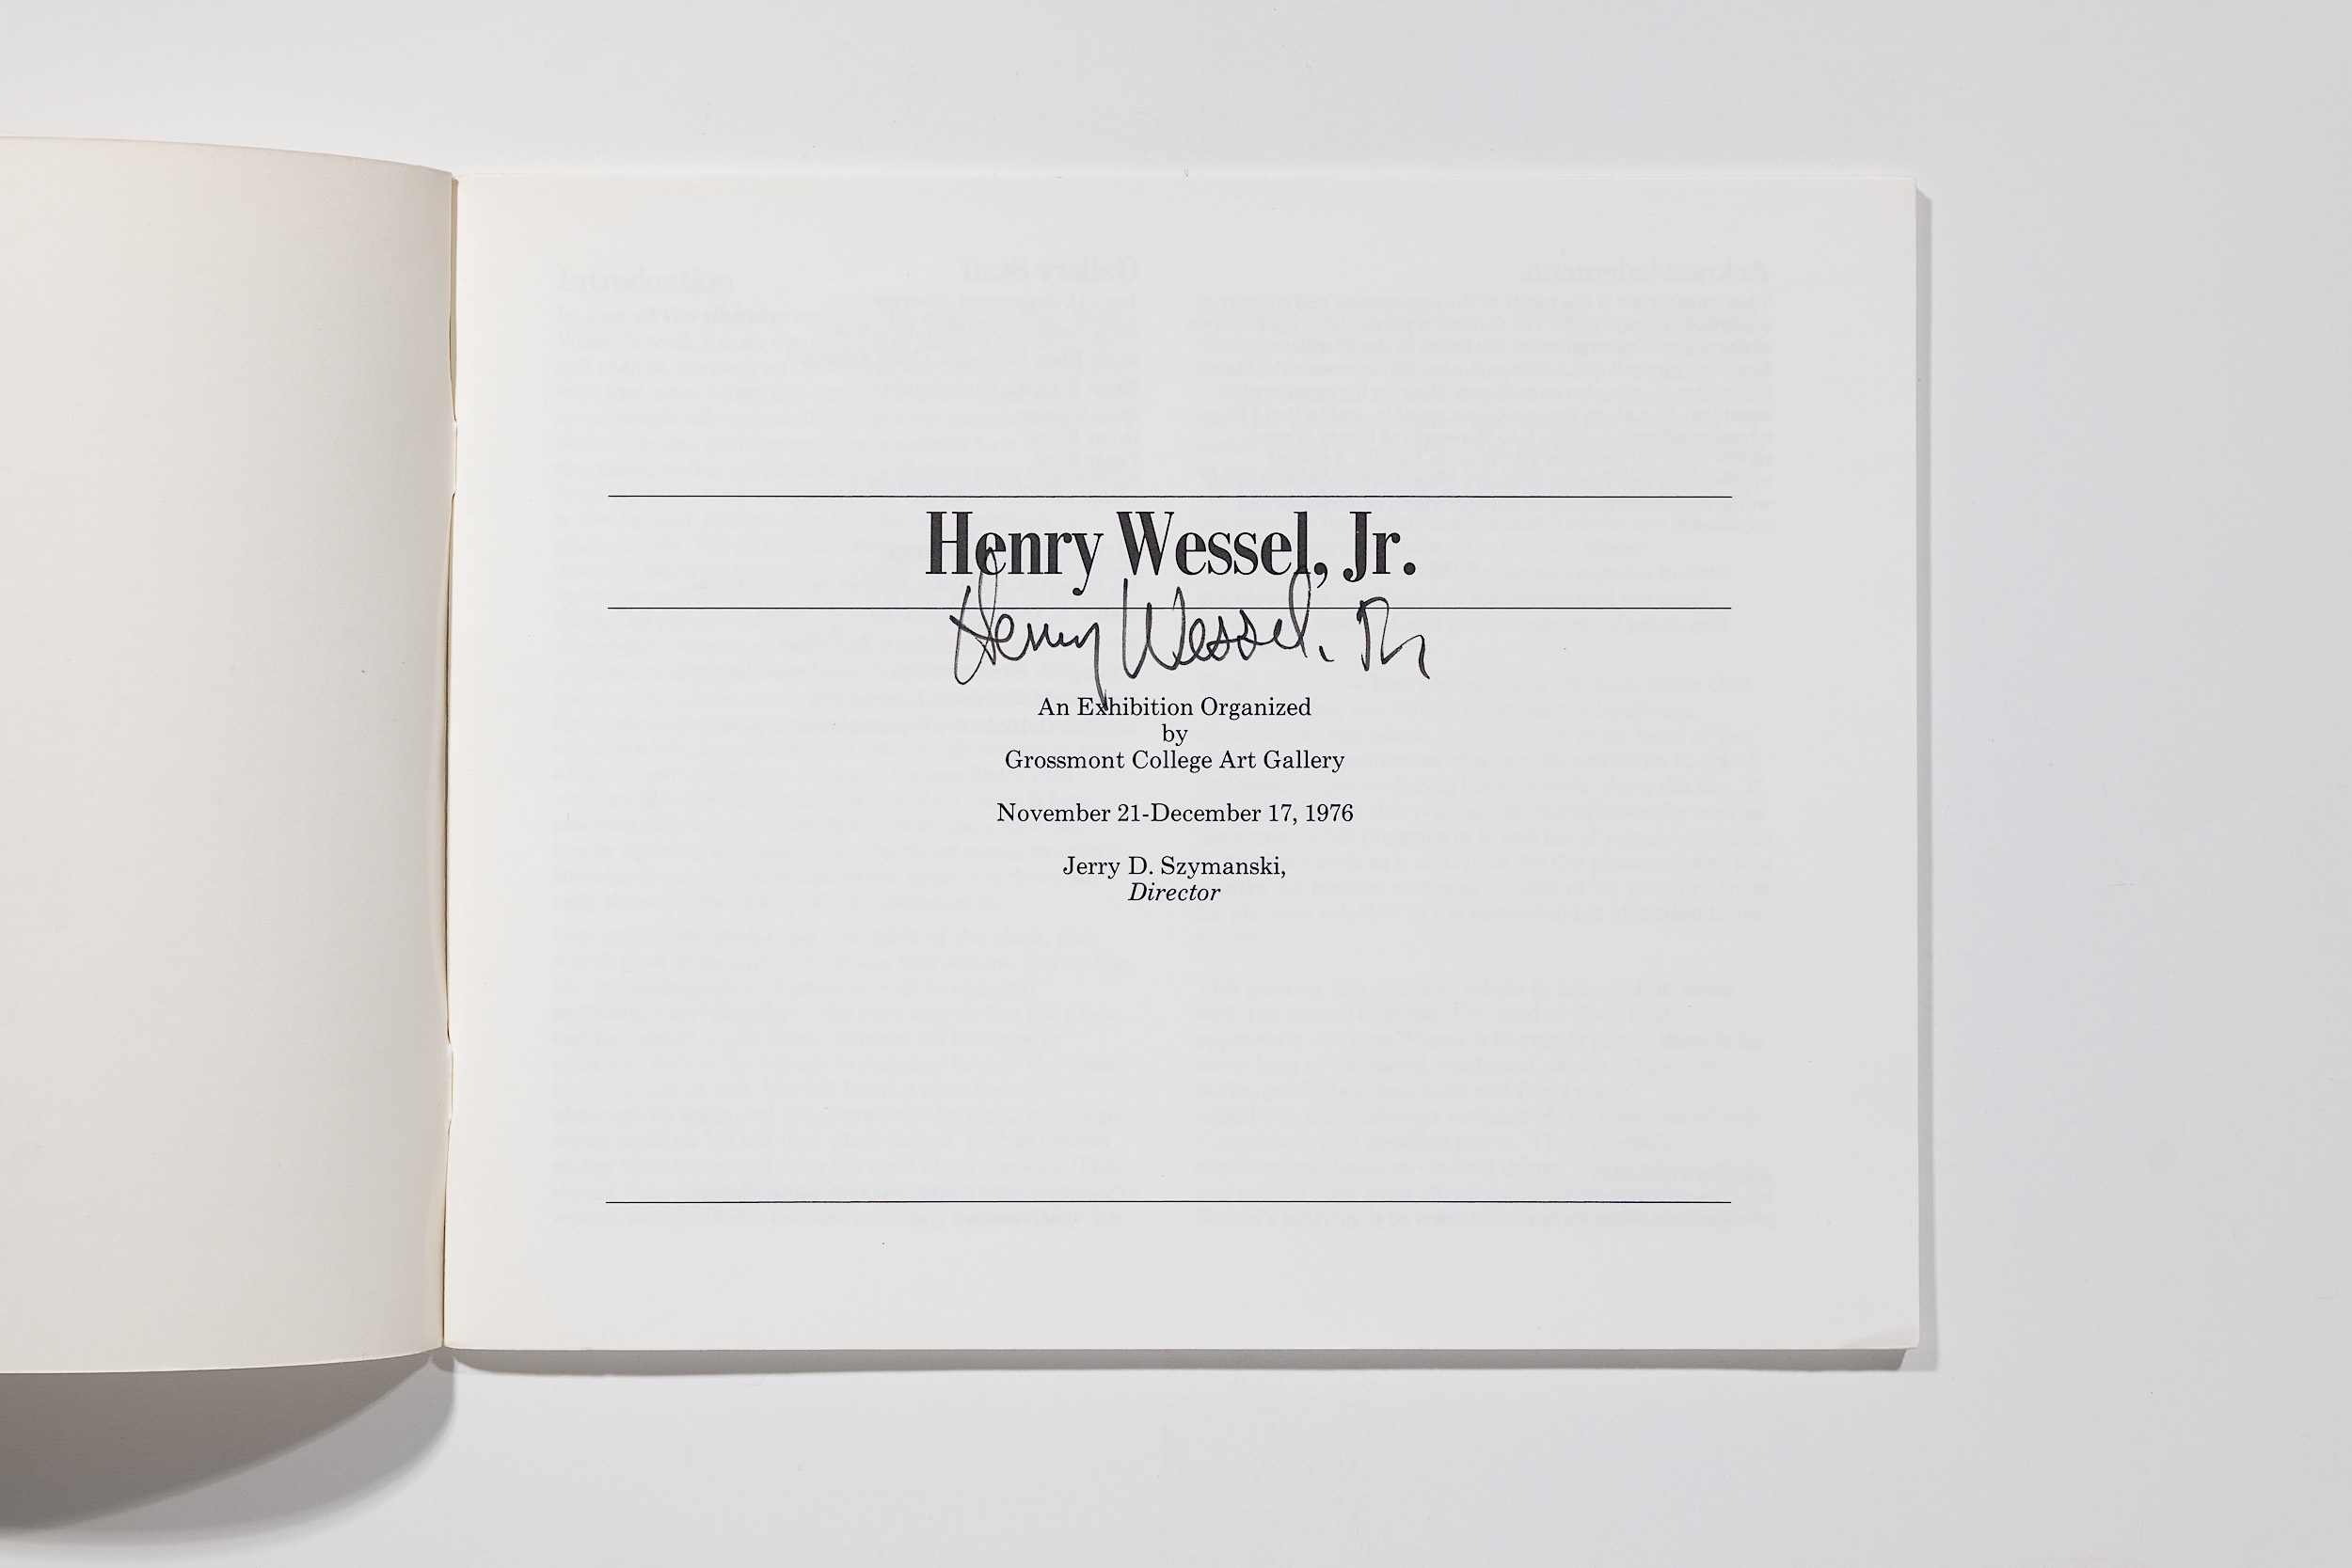 Henry Wessel Jr. - Grossmont College Catalog Image 3